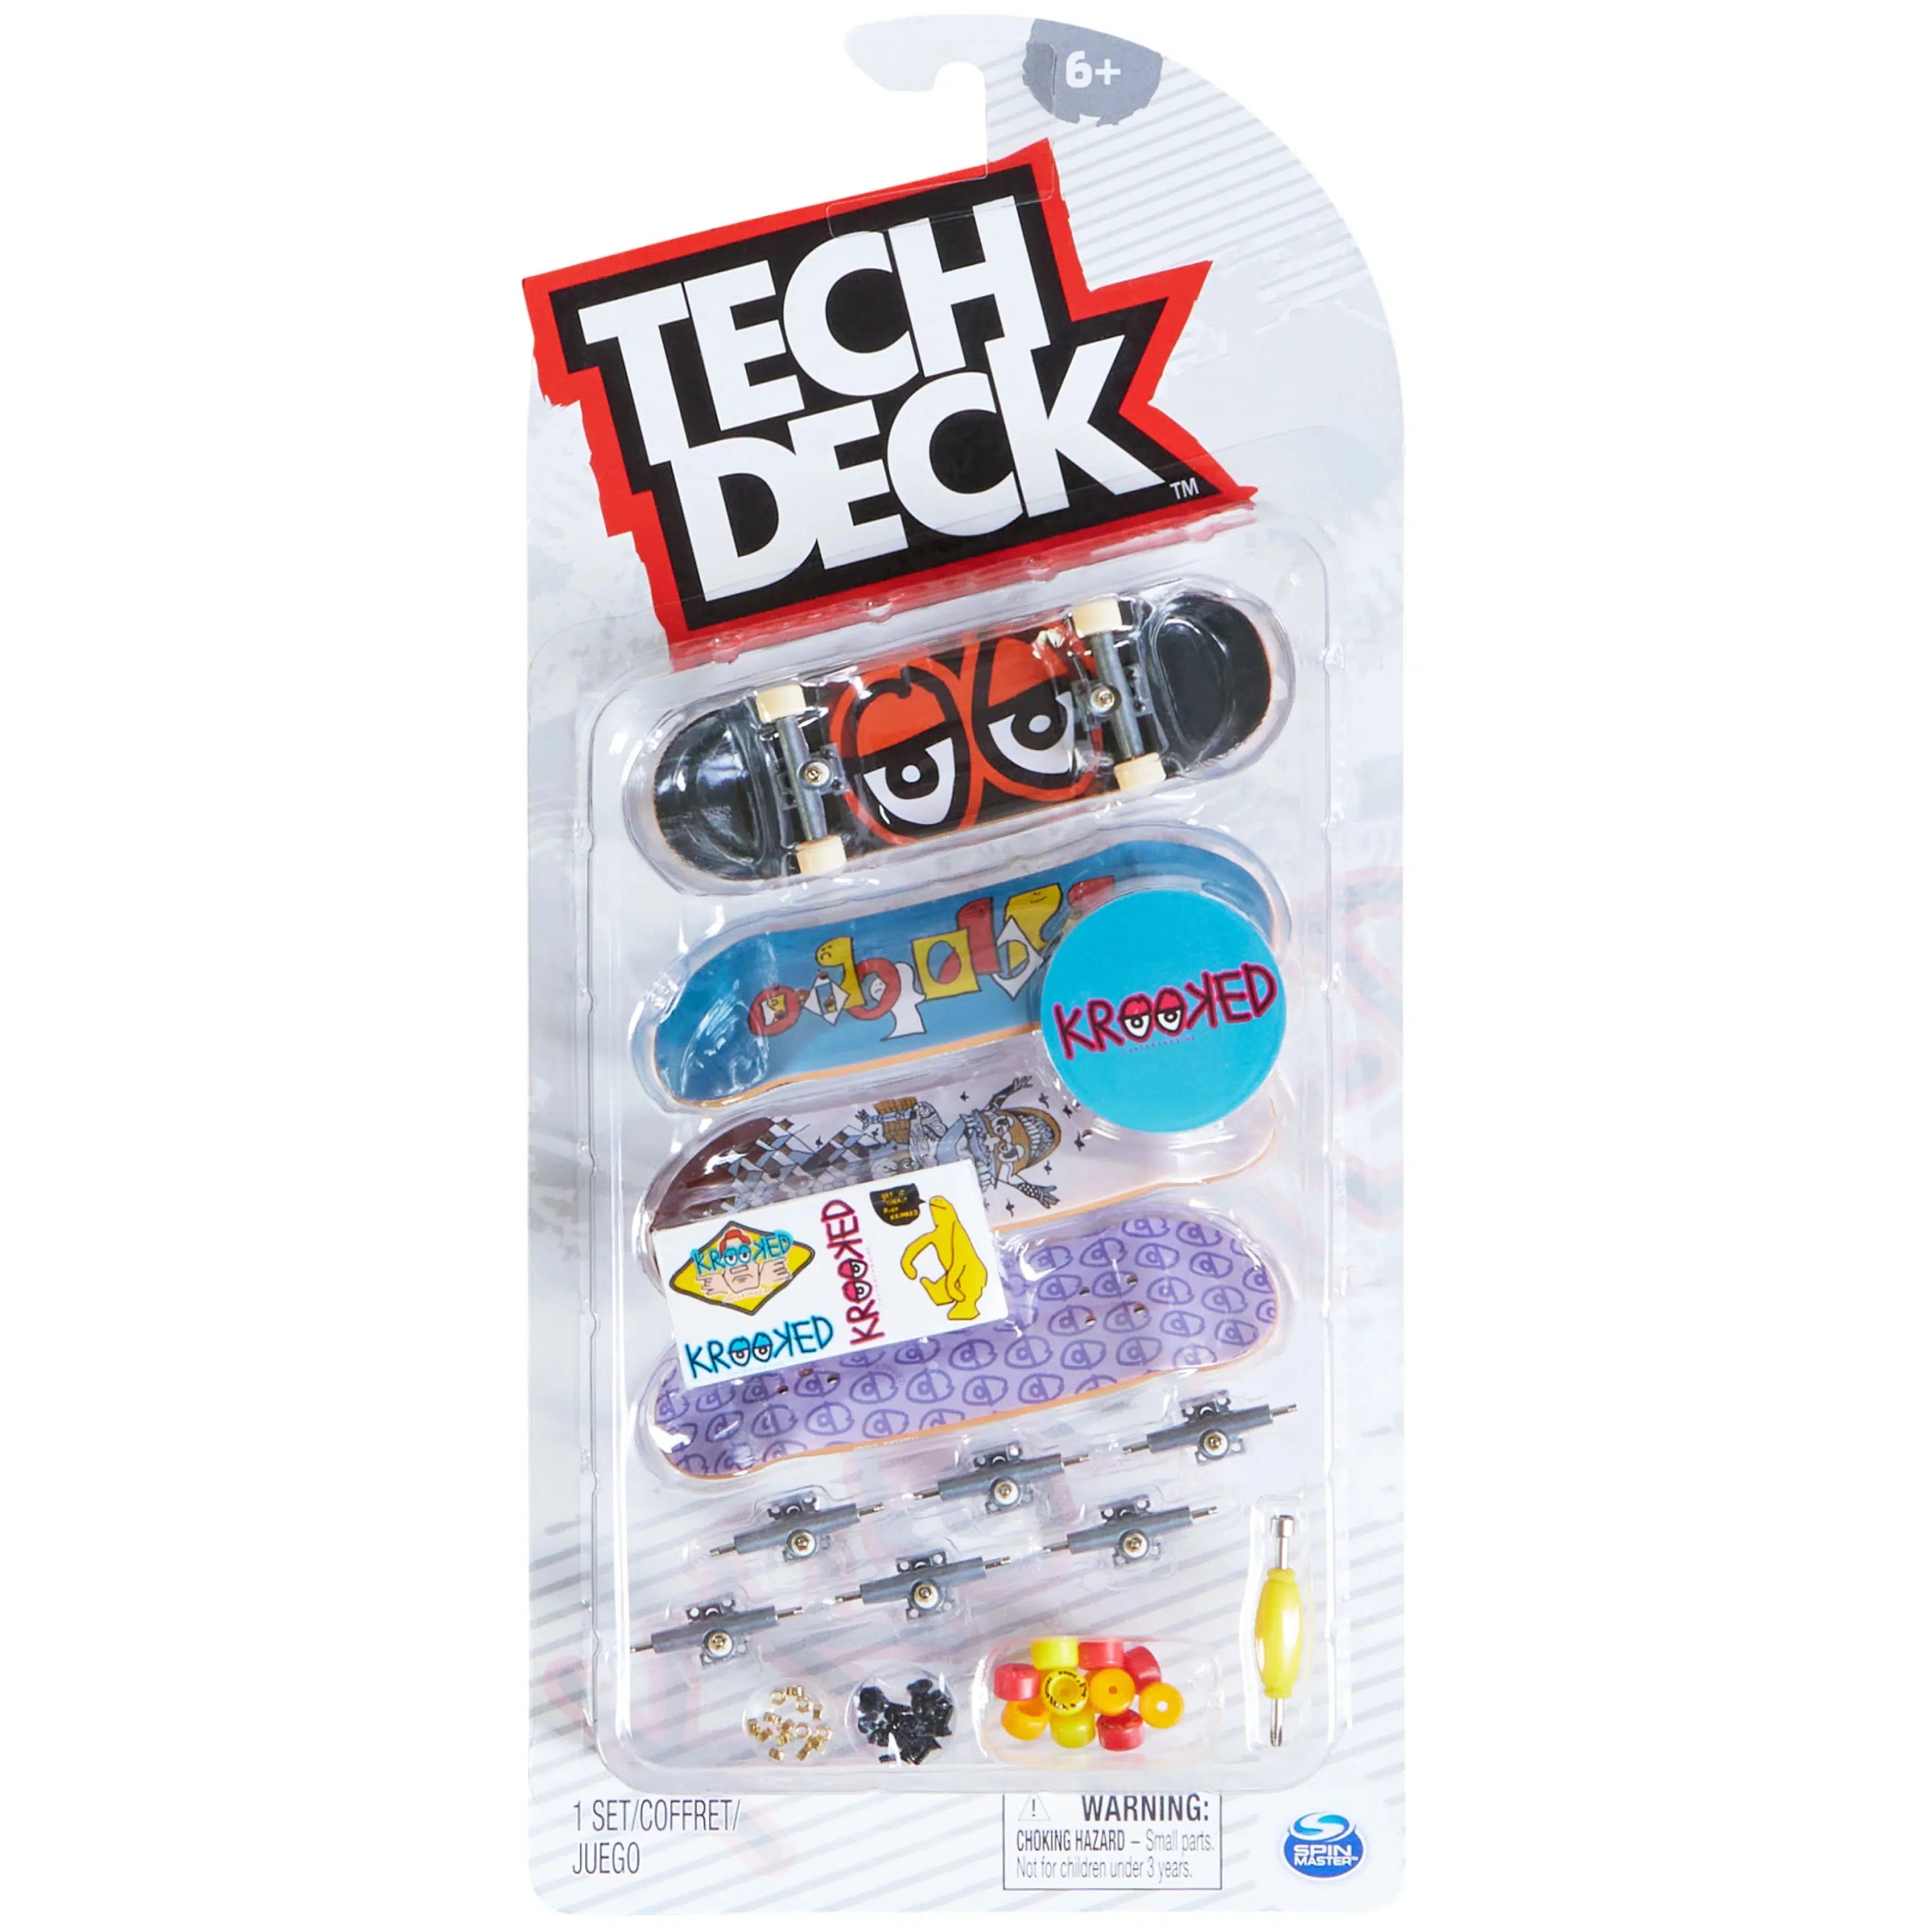 Fingerskate Tech Deck Pack Of 4 Skates